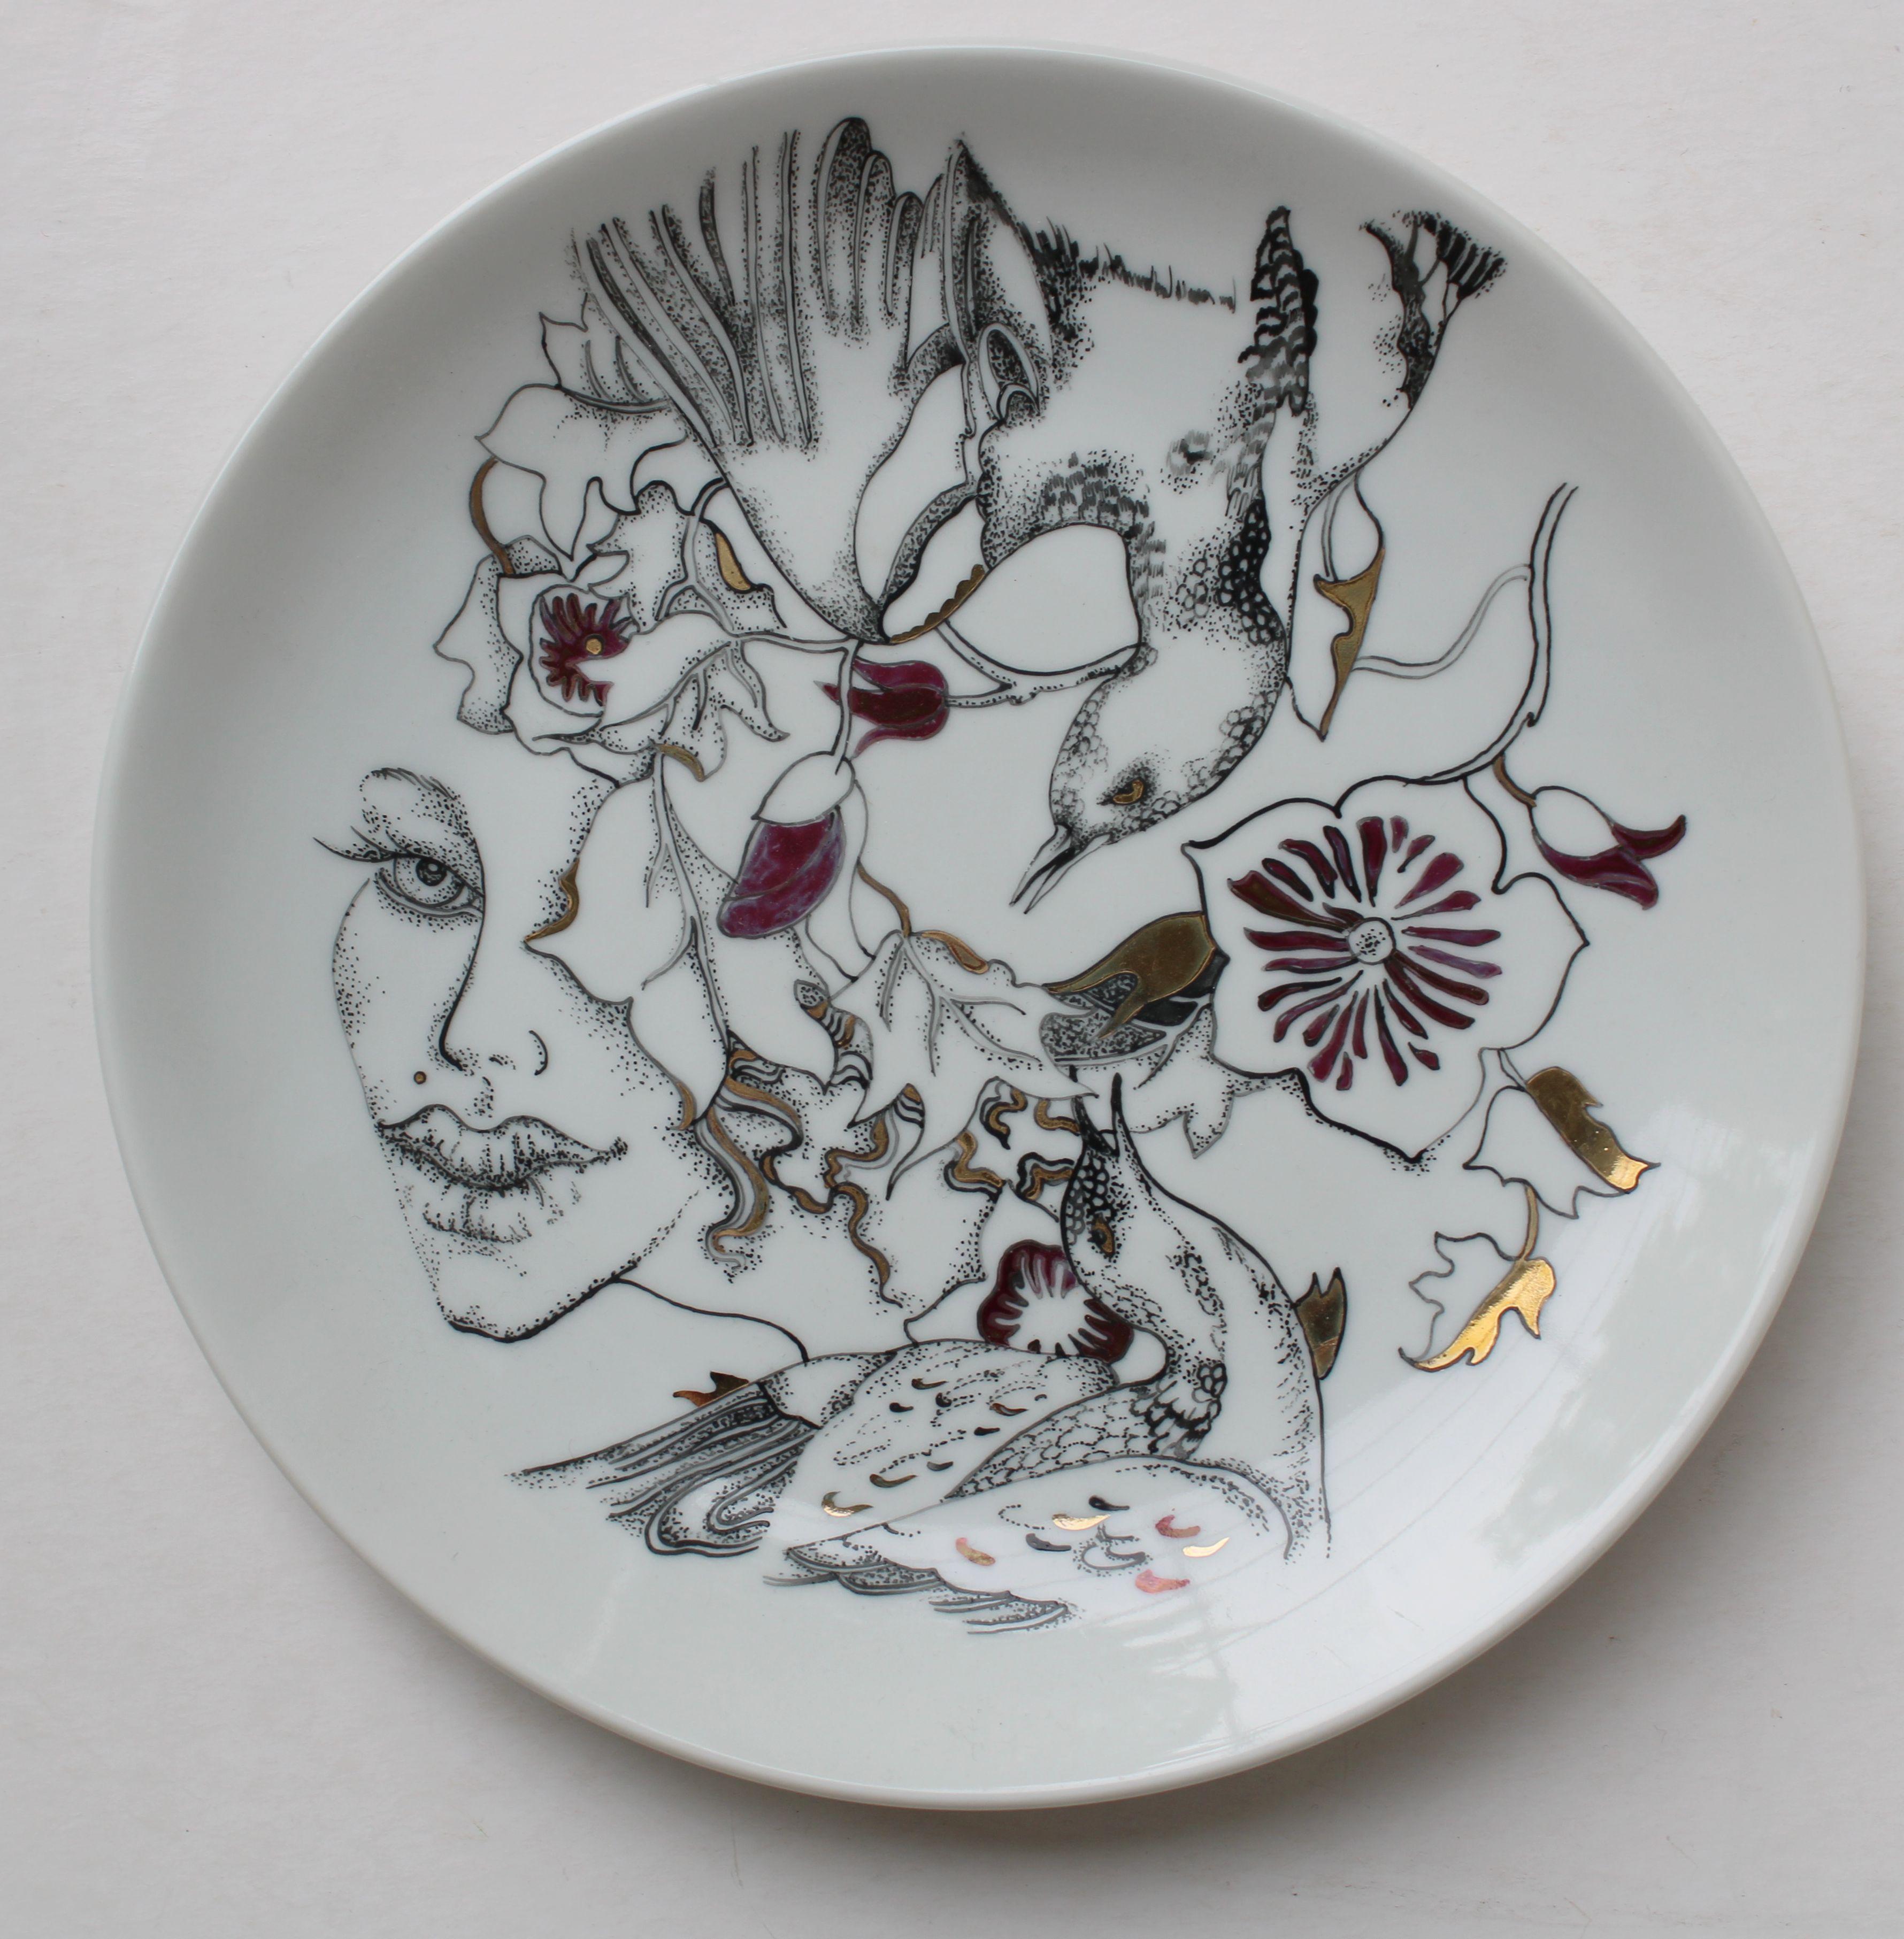 Oiseaux  Assiette en porcelaine peinte, diamètre 20,5 cm, 2009, - Sculpture de Ieva Liepina